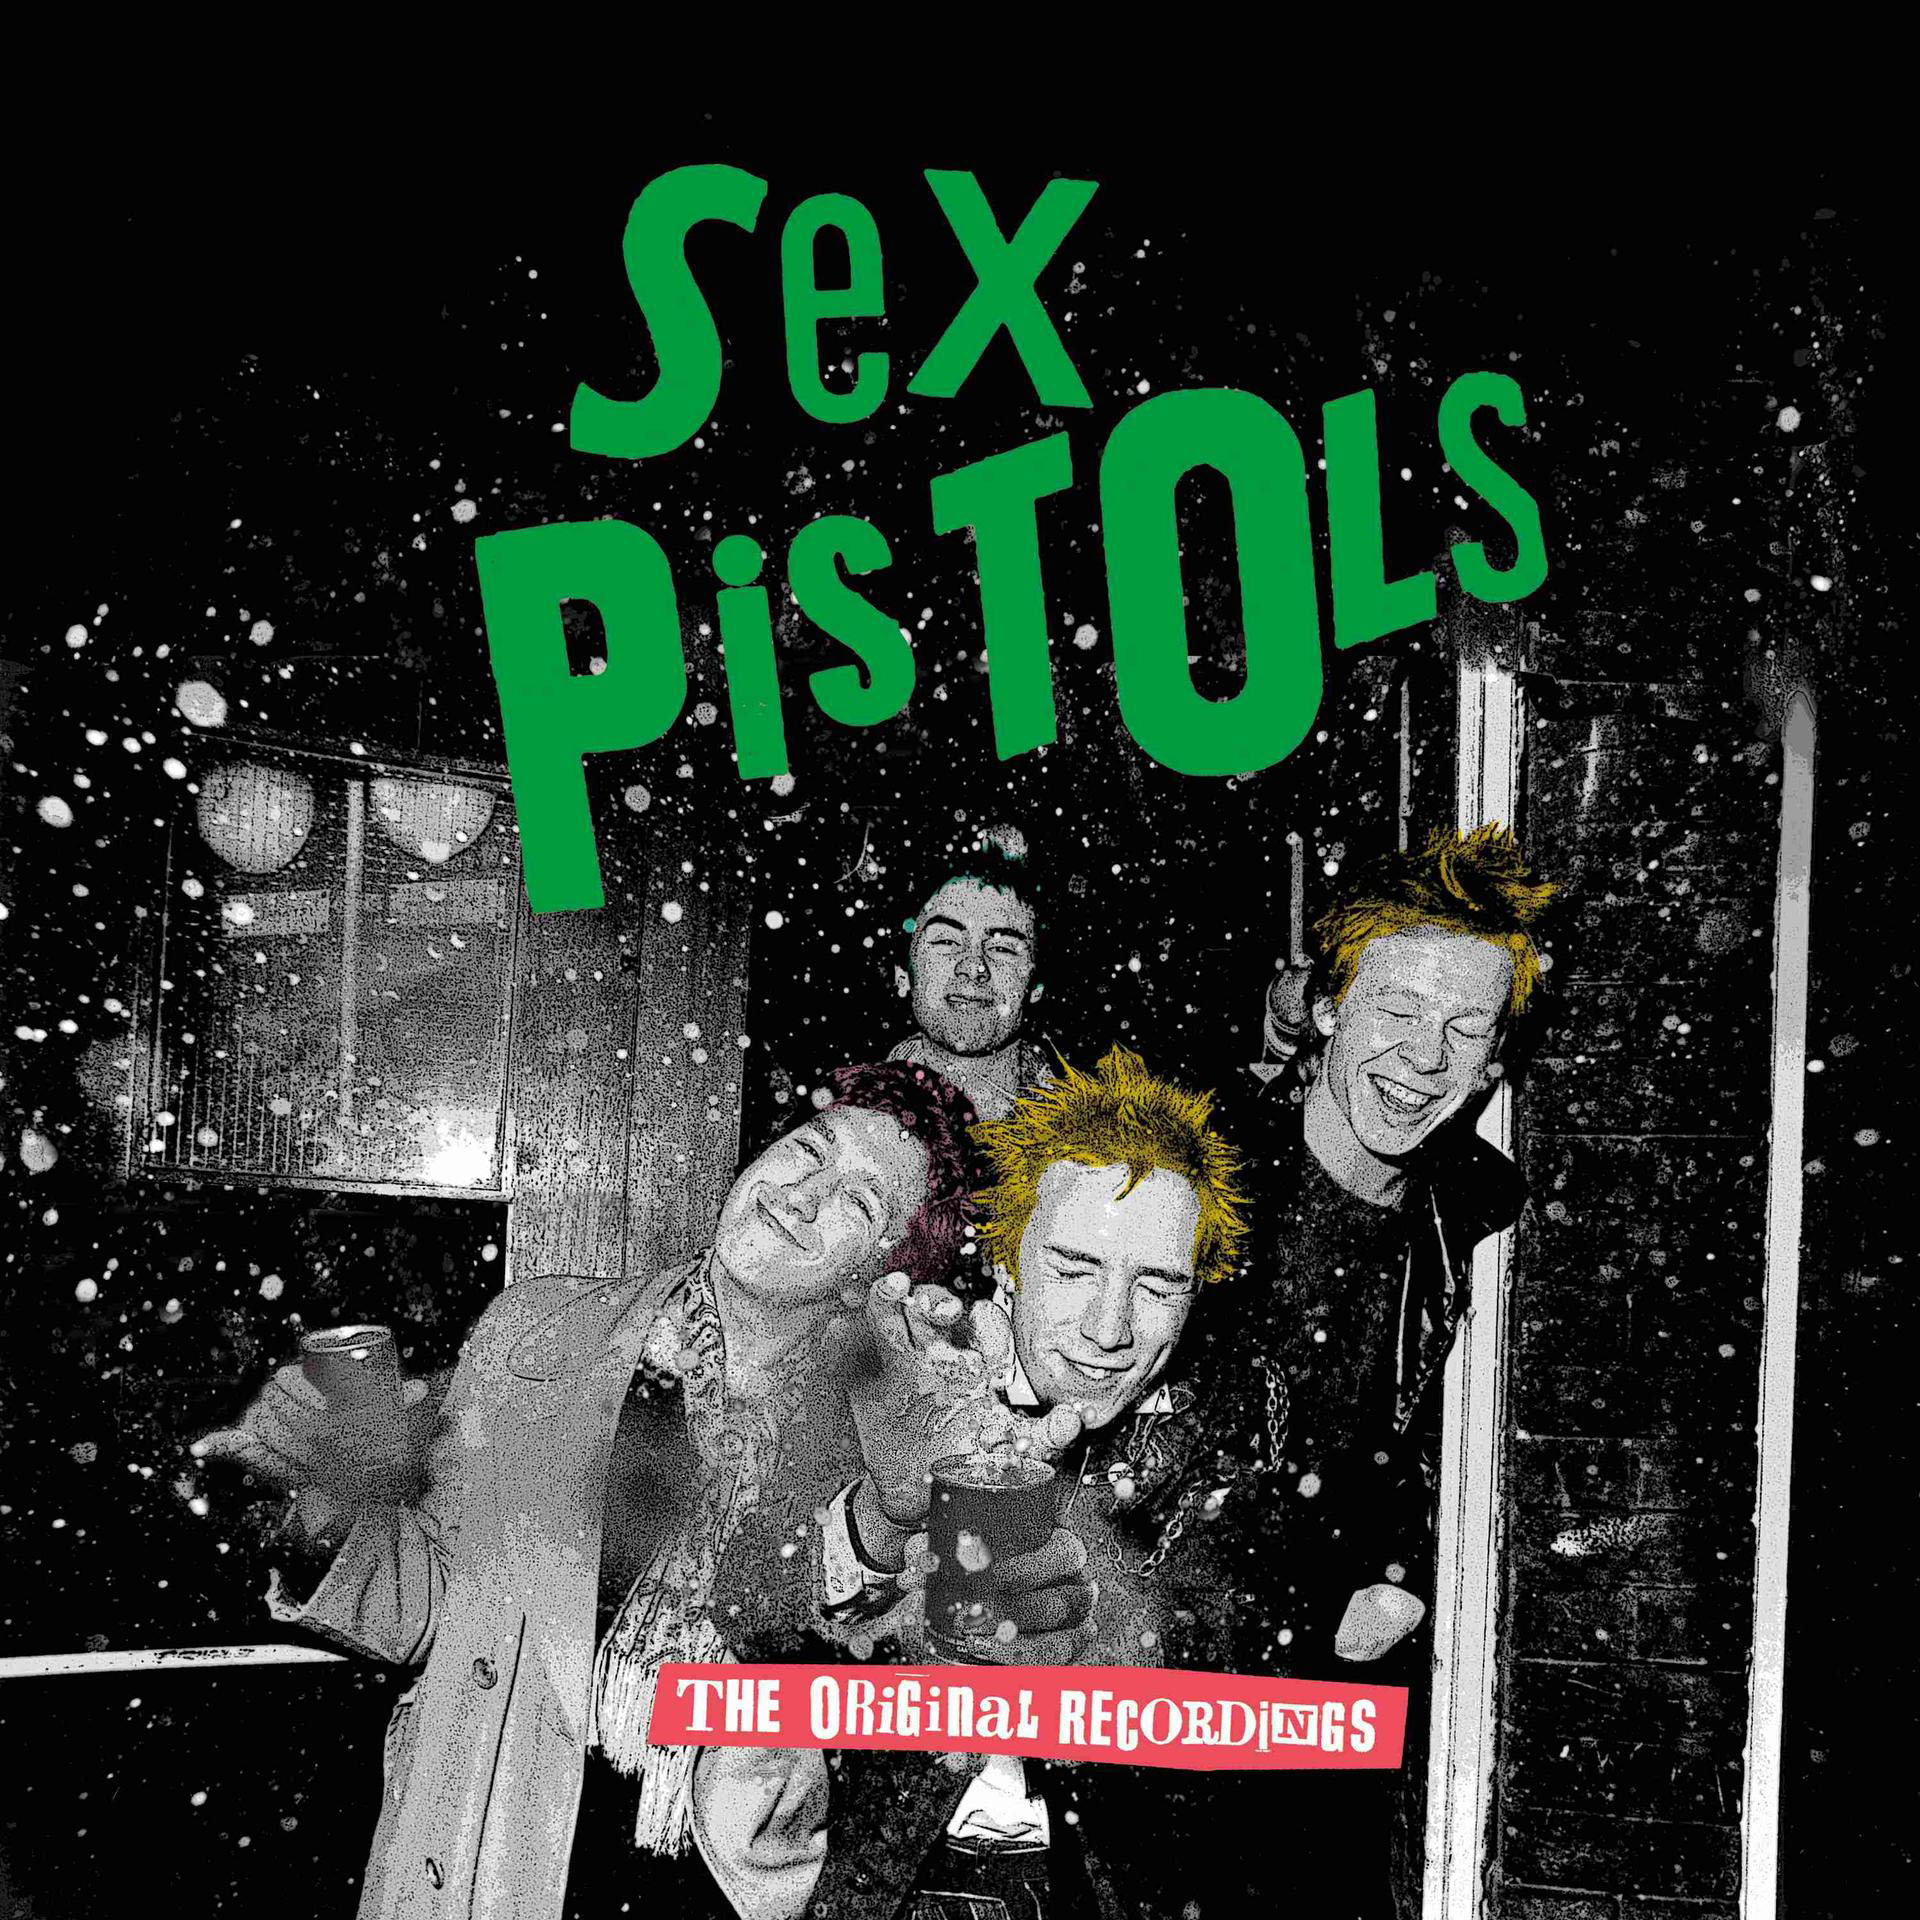 The Sex Pistols (2LP) (Vinyl) Original The - - Recordings